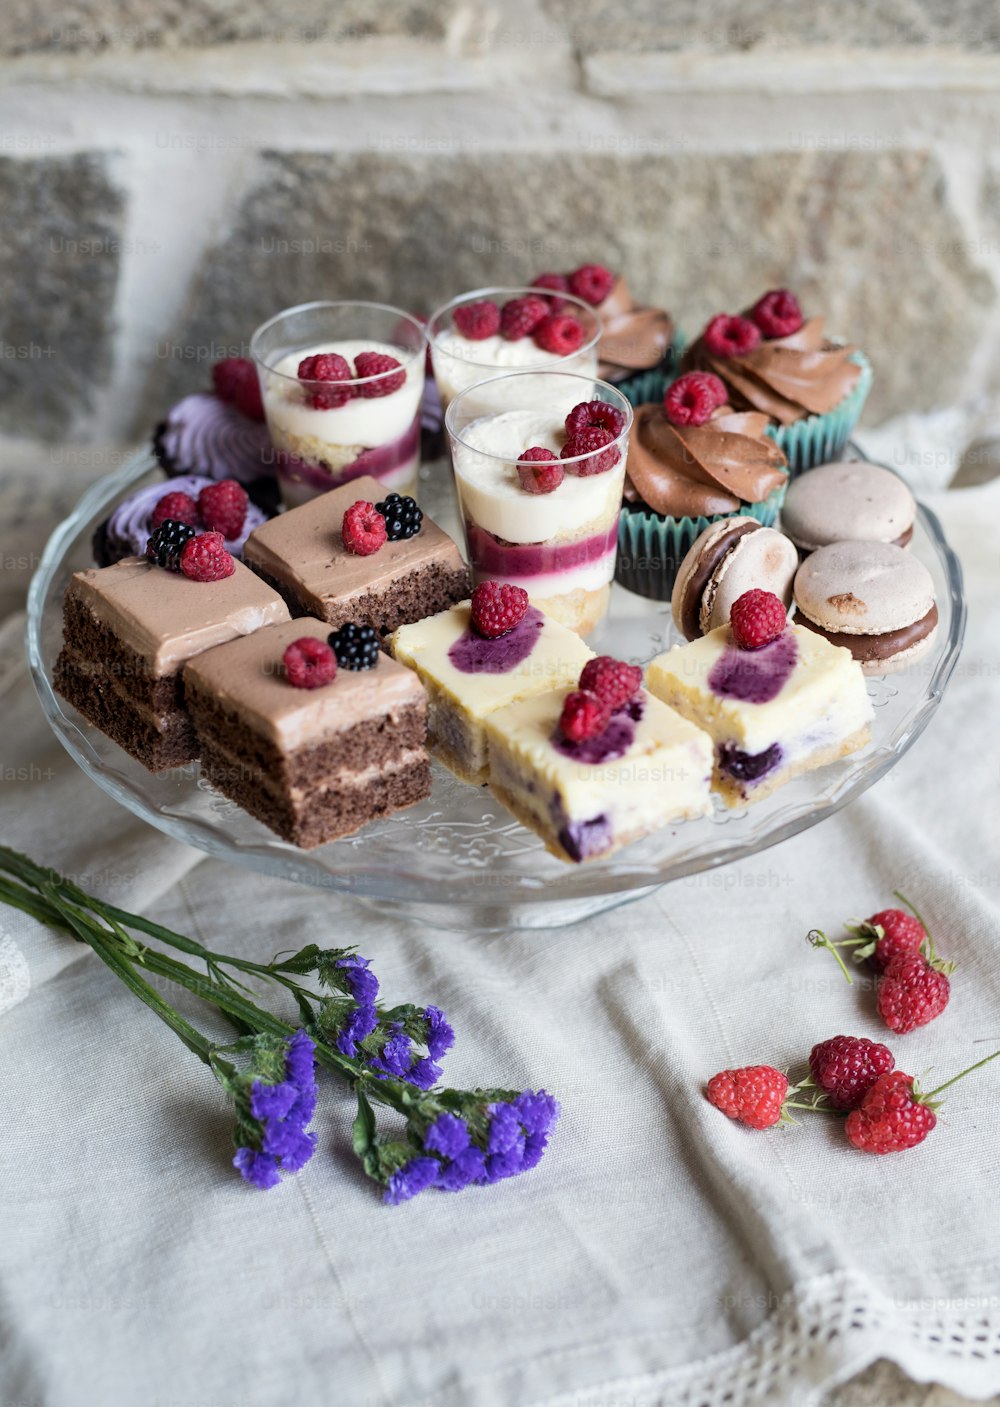 Una vista superior de la selección de coloridos y deliciosos postres de pastel en bandeja sobre la mesa.